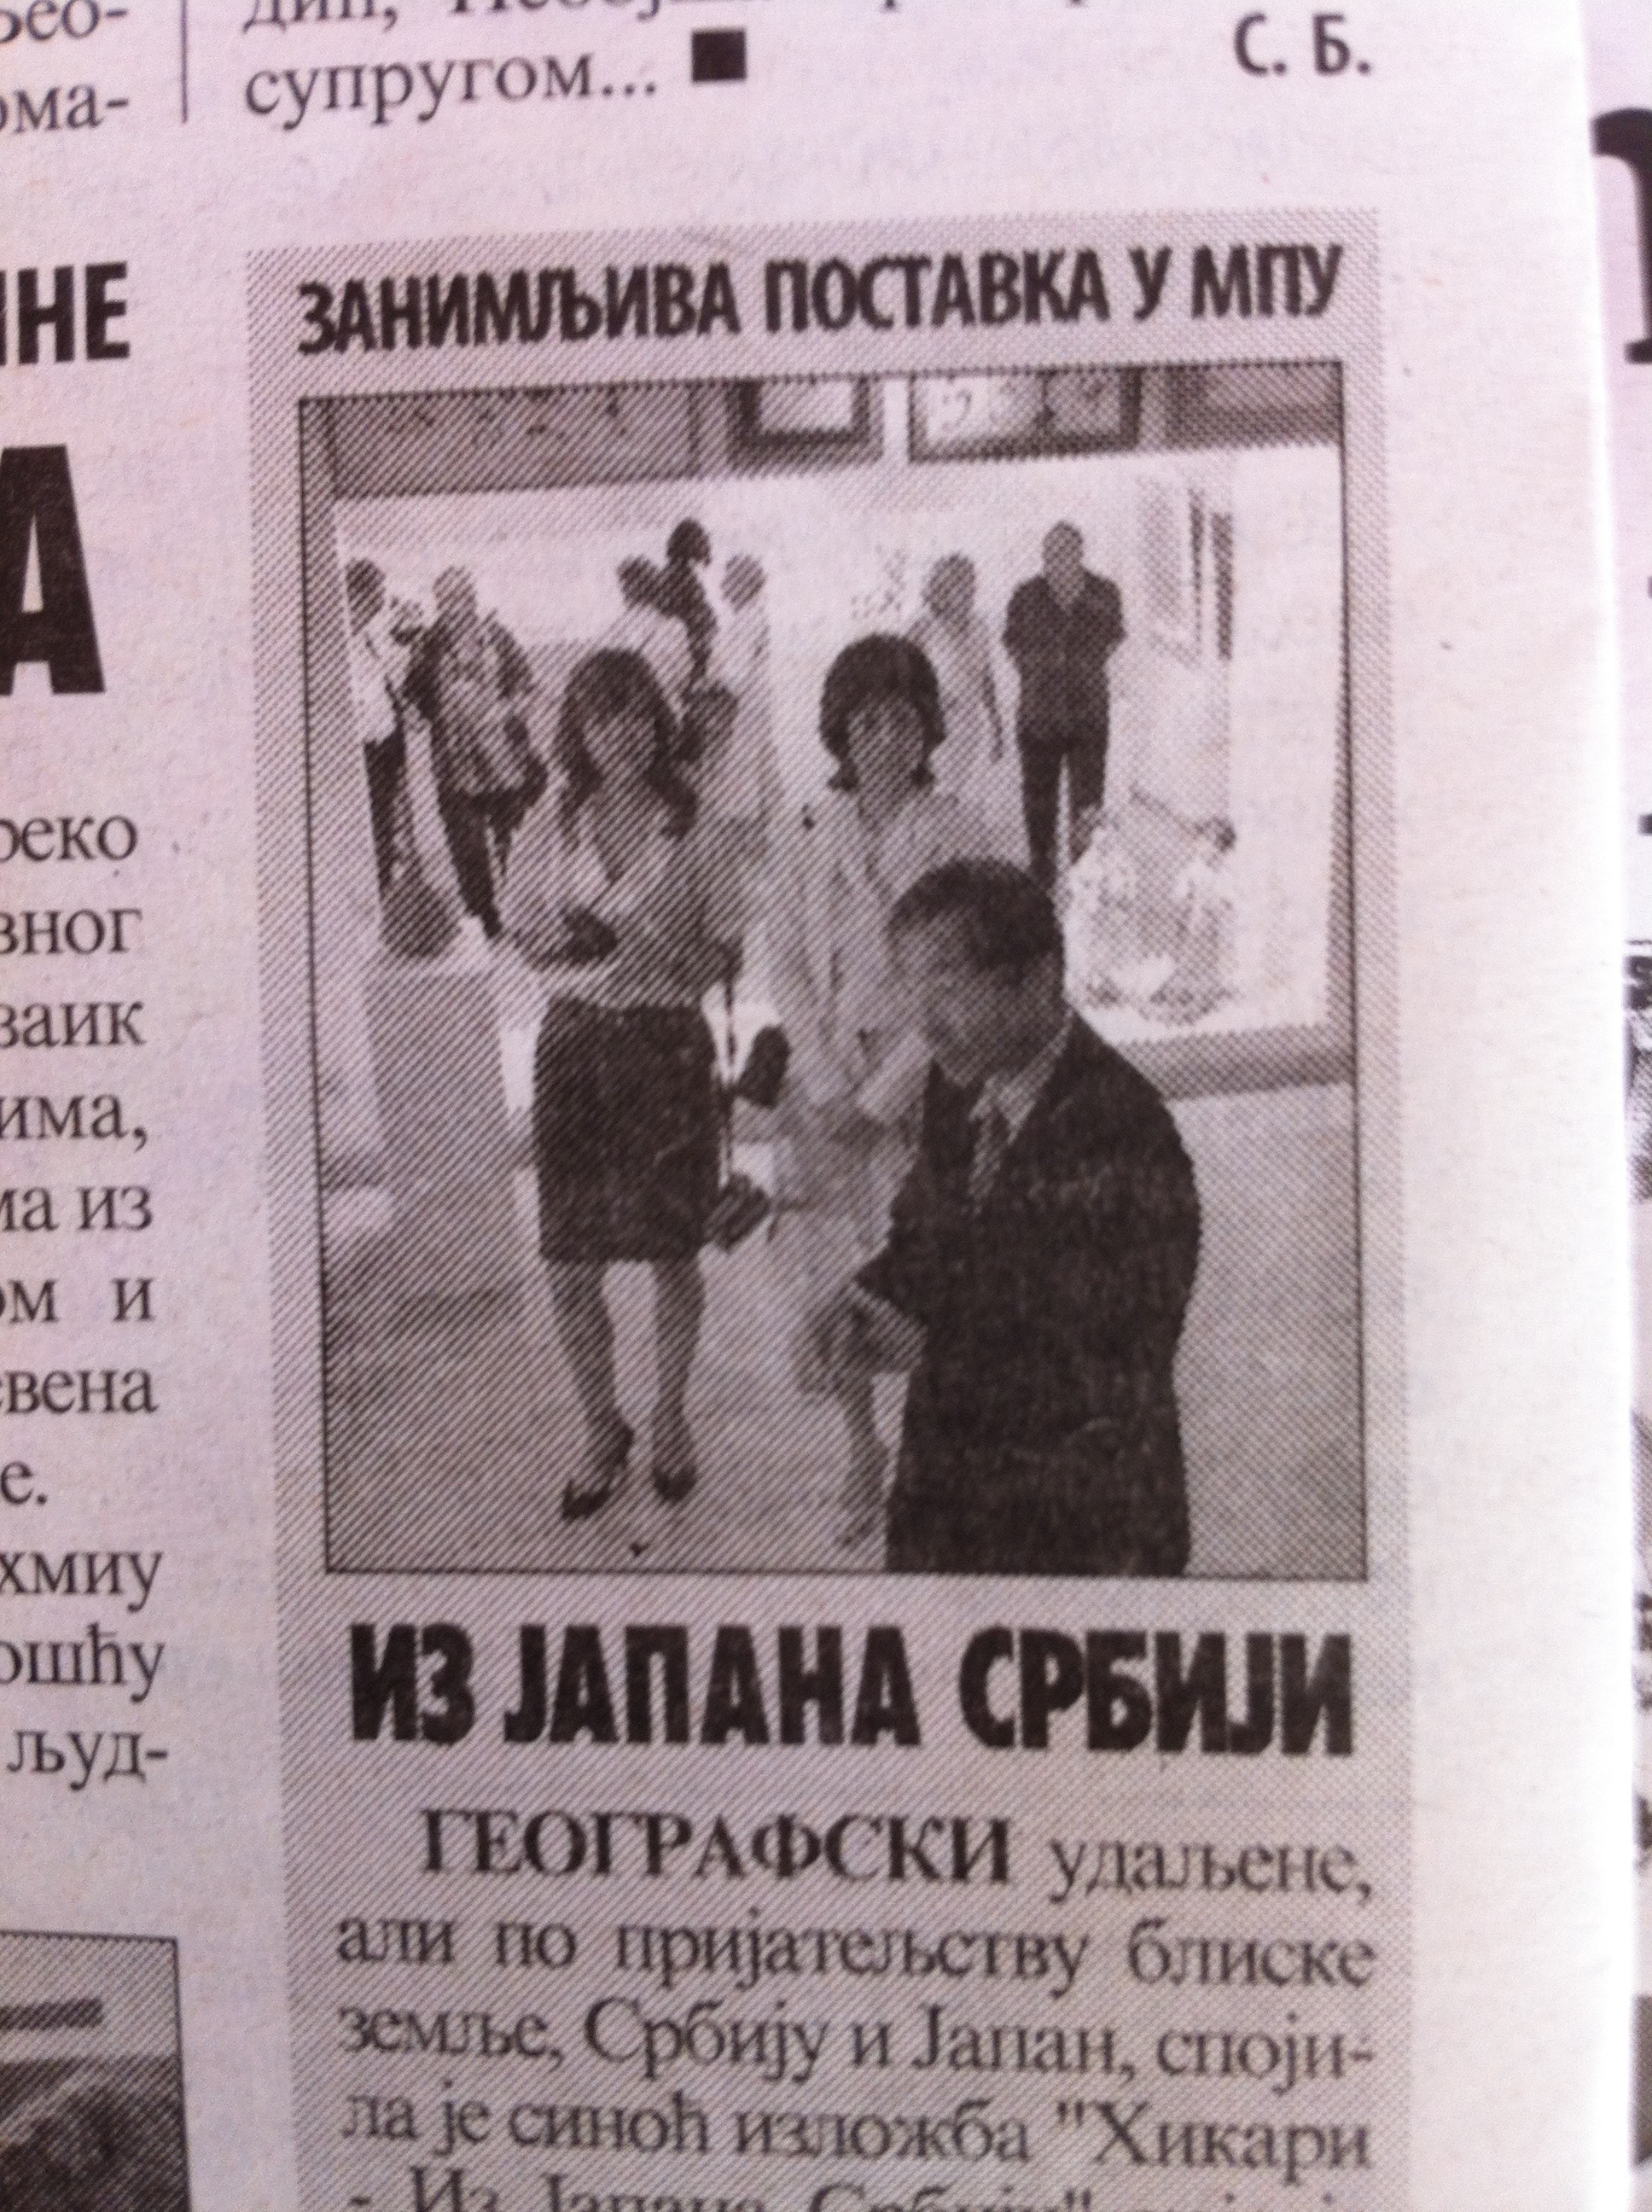 Newspaper in Serbia